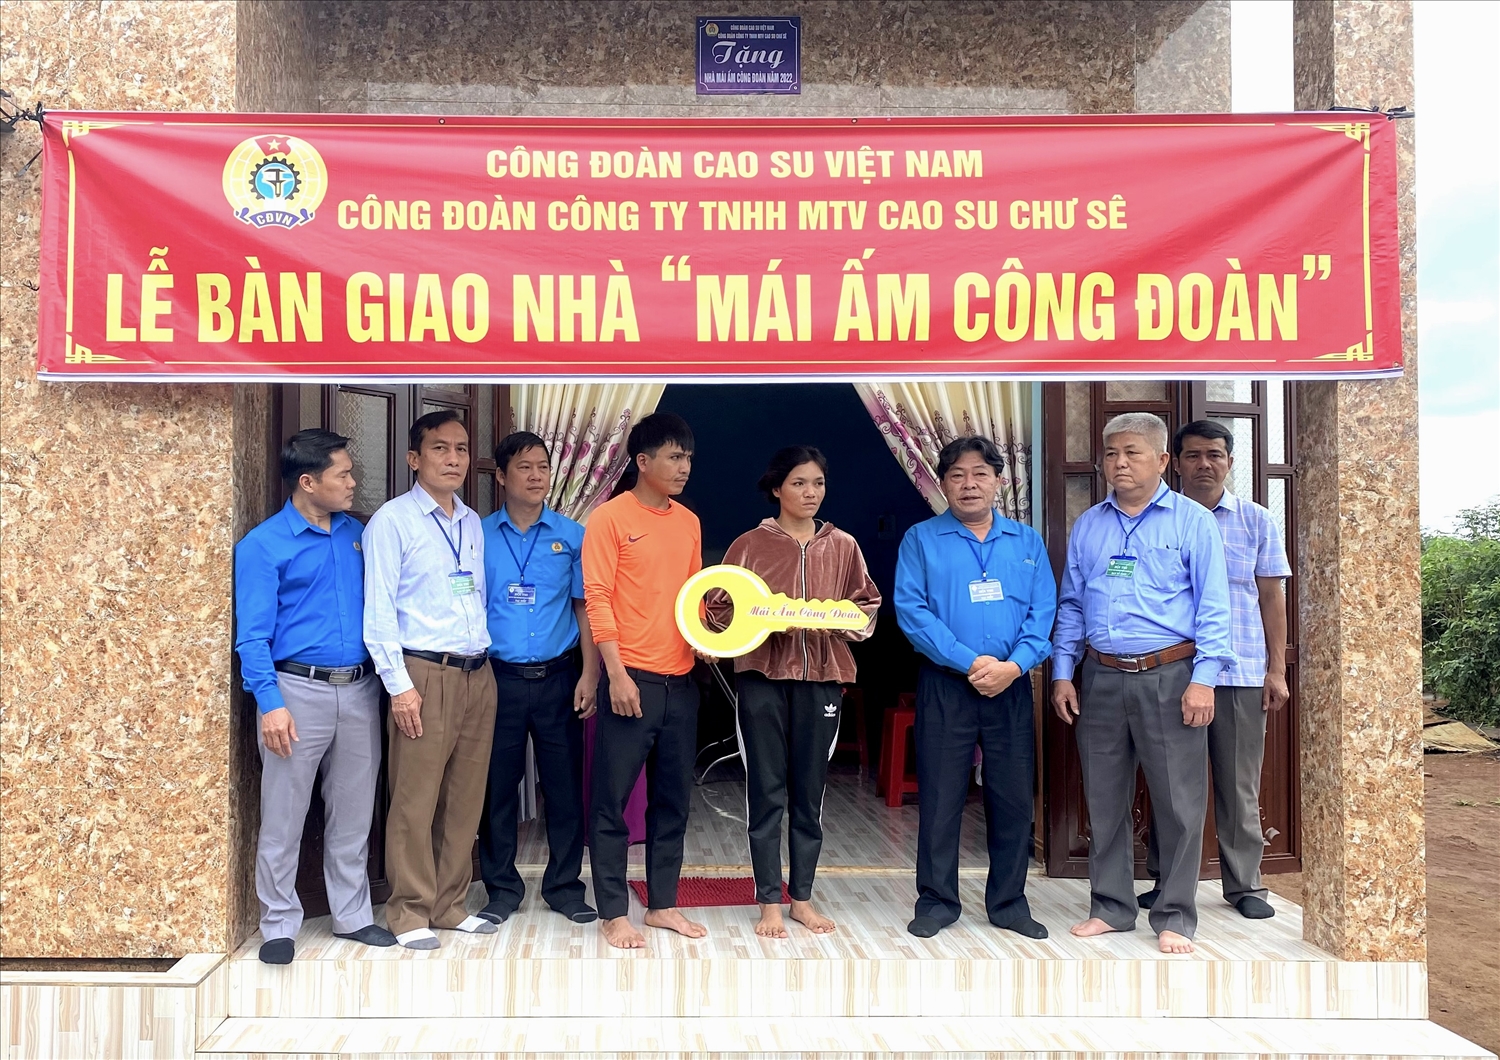 Ông Phan Mạnh Hùng, Chủ tịch Công đoàn cao su Việt nam trao nhà mái ấm công đoàn cho công nhân DTTS có hoàn cảnh khó khăn tại công ty cao su Chư Sê